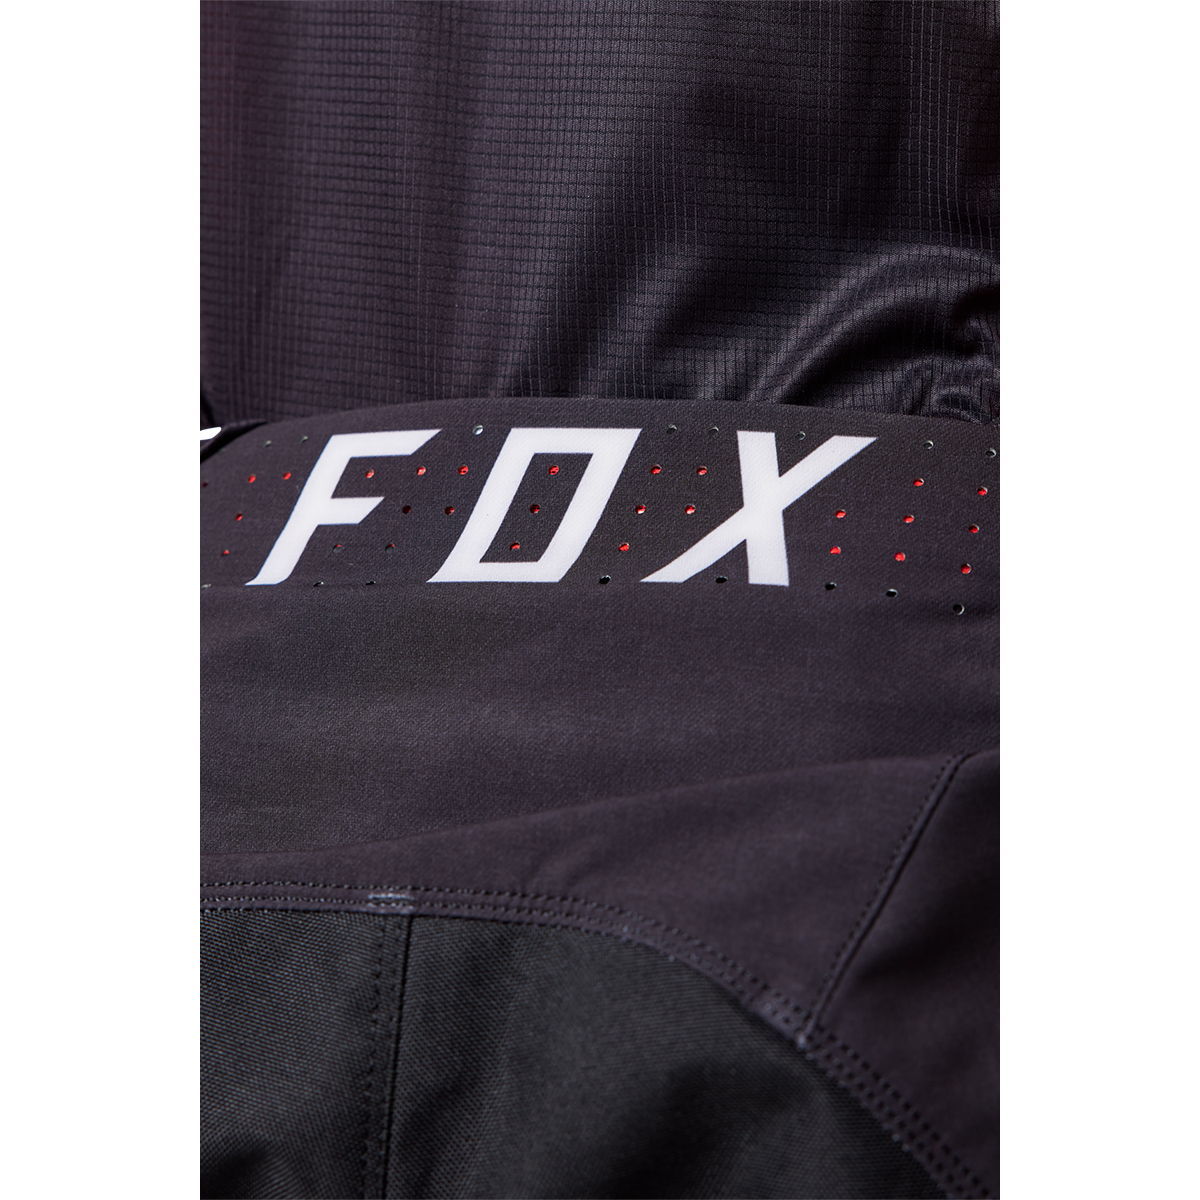 FOX RACING フレックスエアー パンツ ホンダ レッド/ブラック/ホワイト